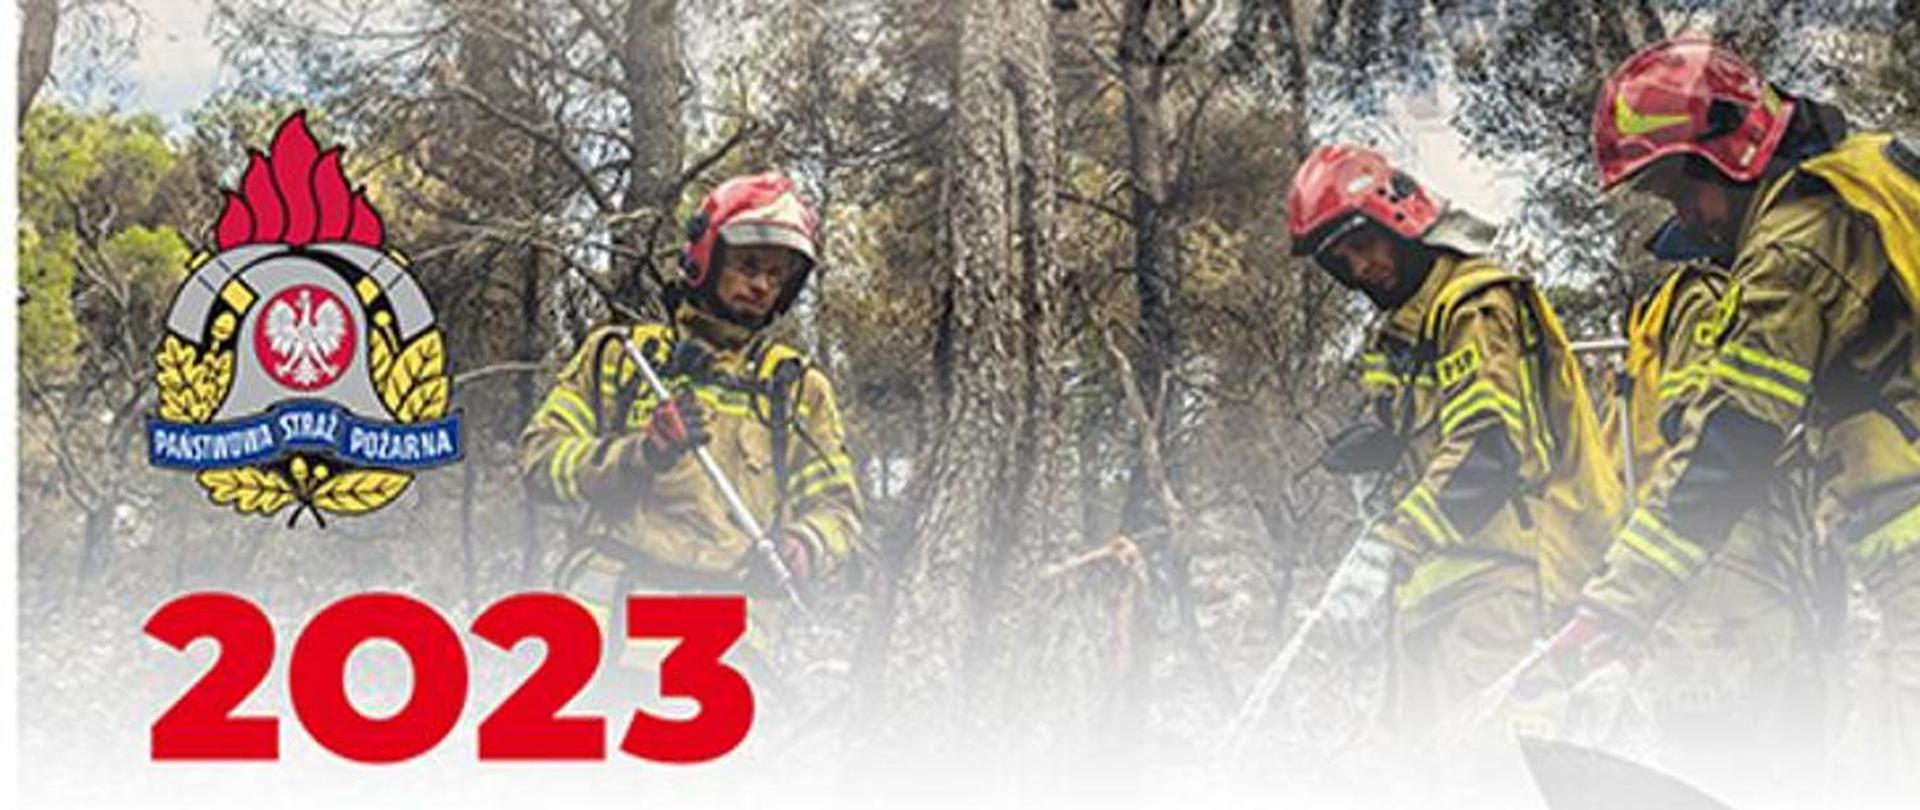 Komenda Główna Państwowej Straży Pożarnej zaprasza do wzięcia udziału w konkursie kalendarzowym